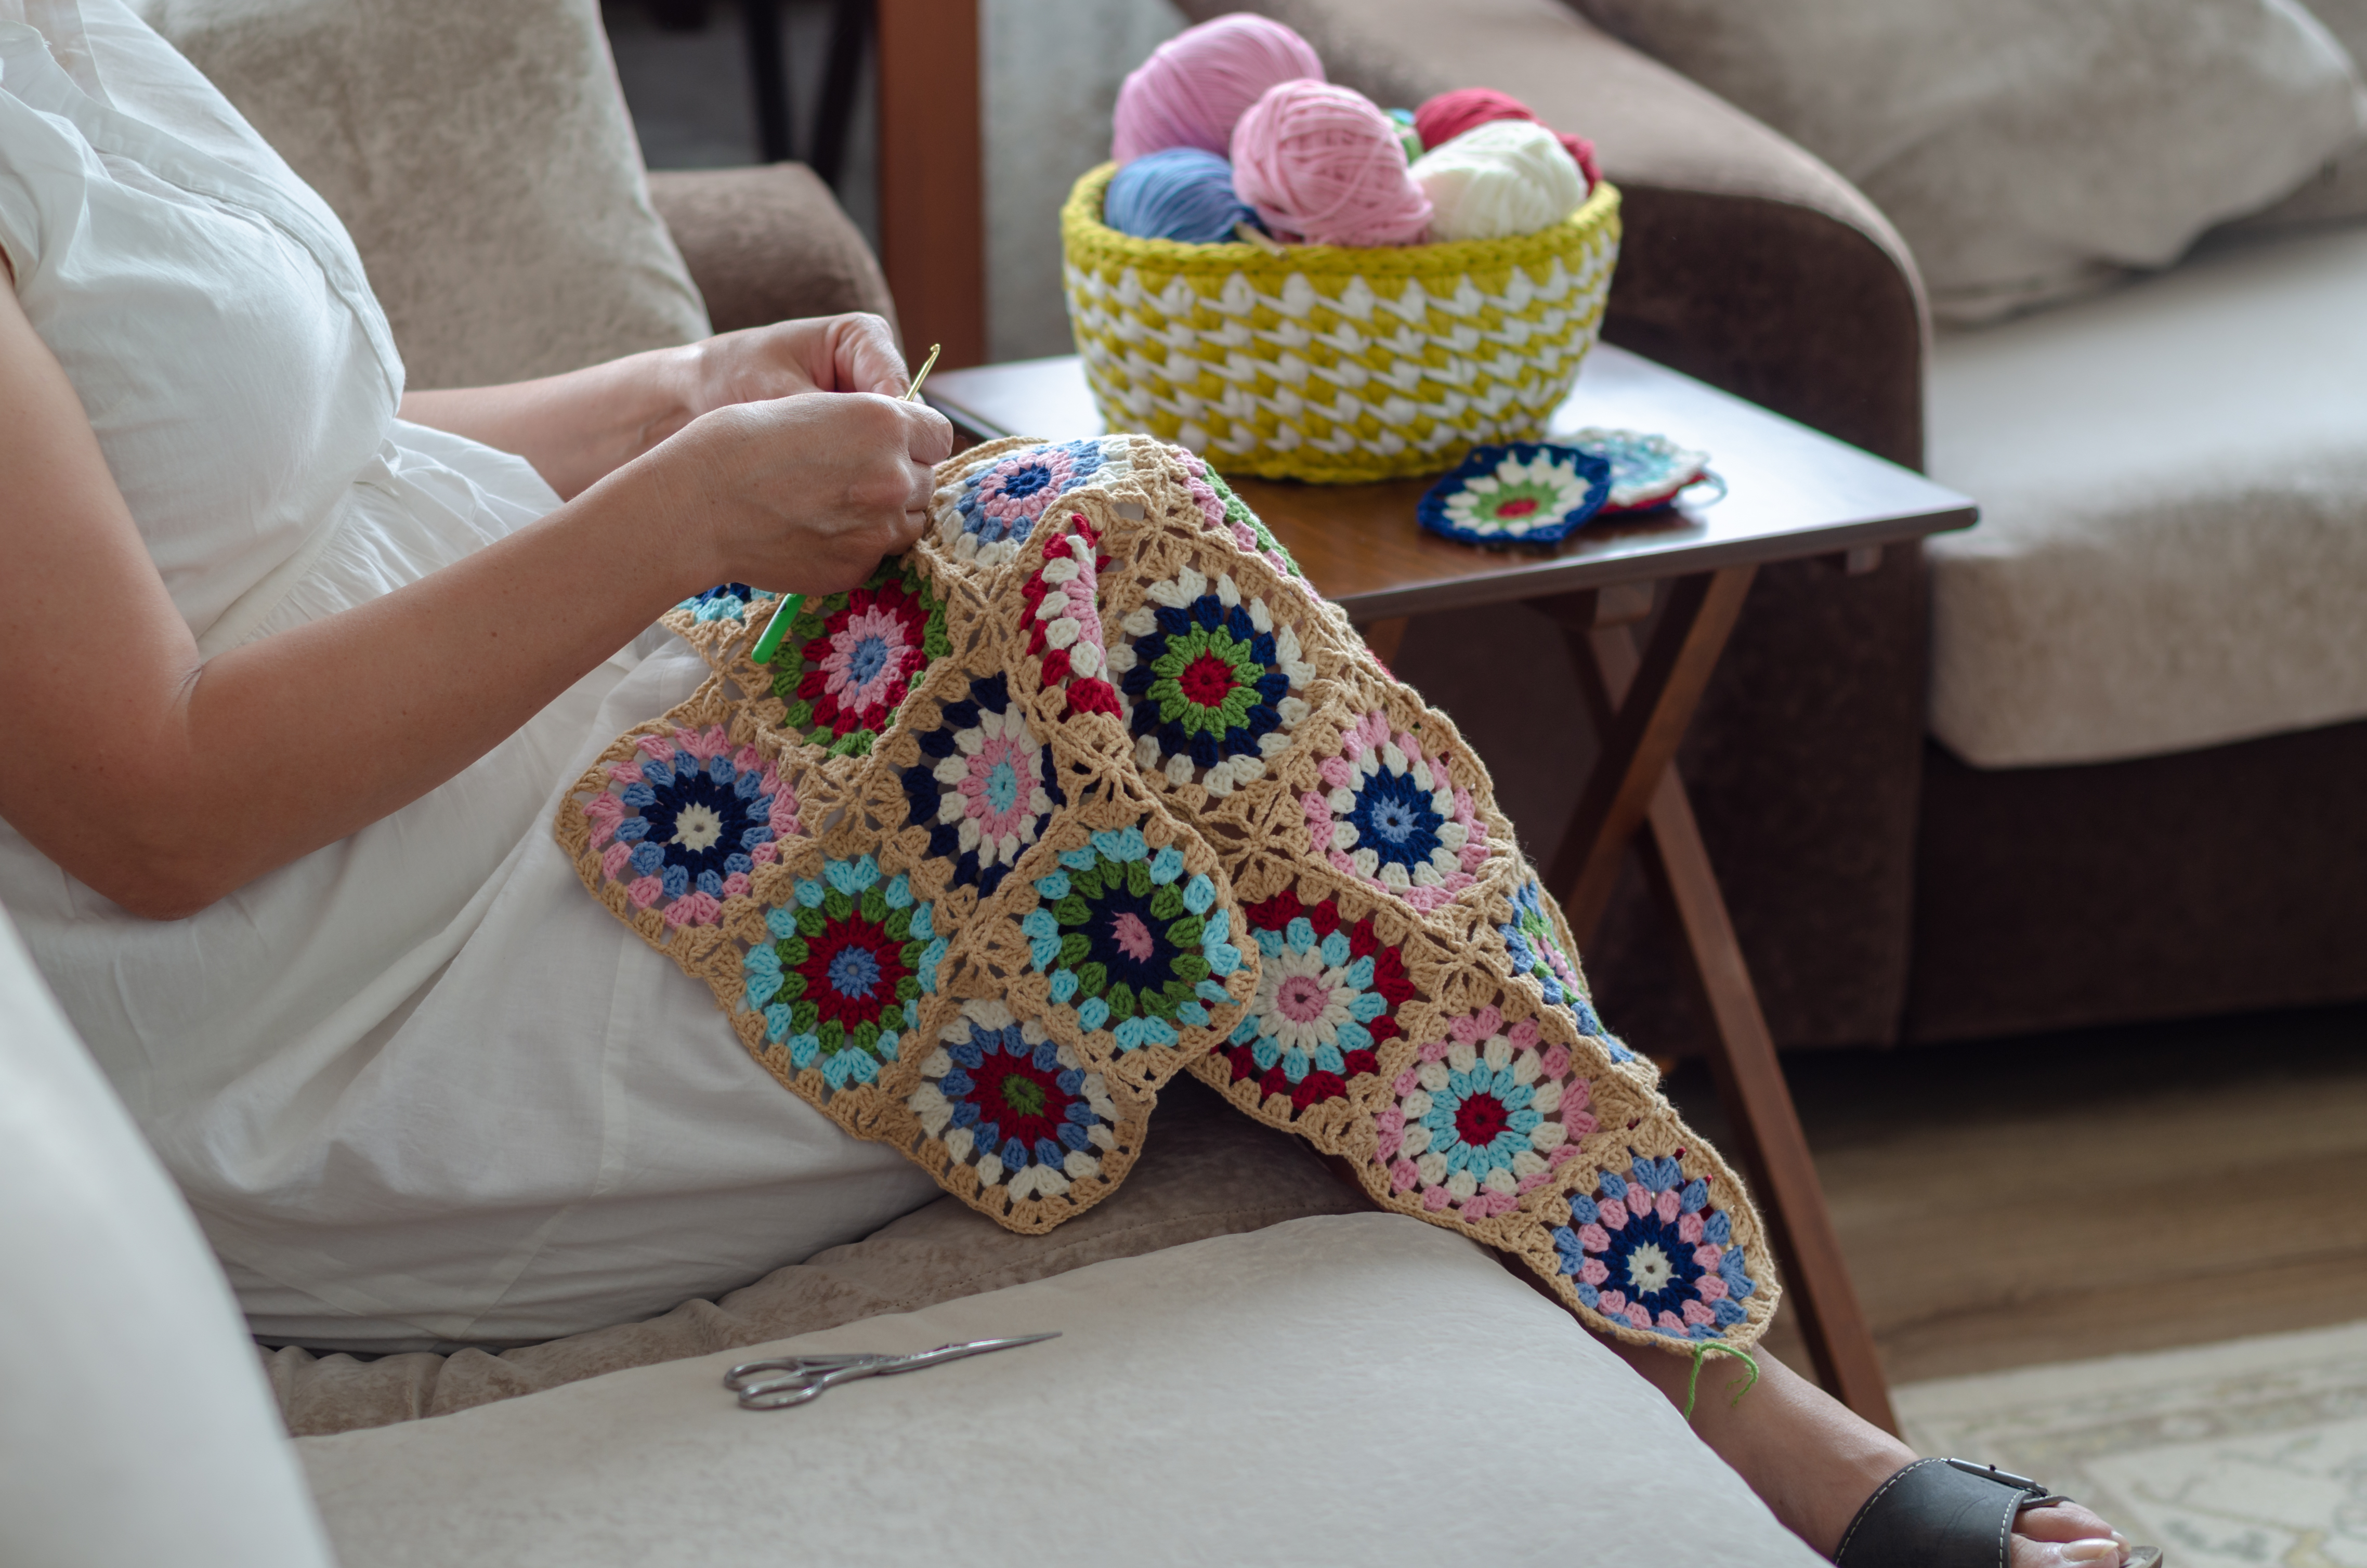 Femme crochetant une couverture pour bébé | Source : Shutterstock